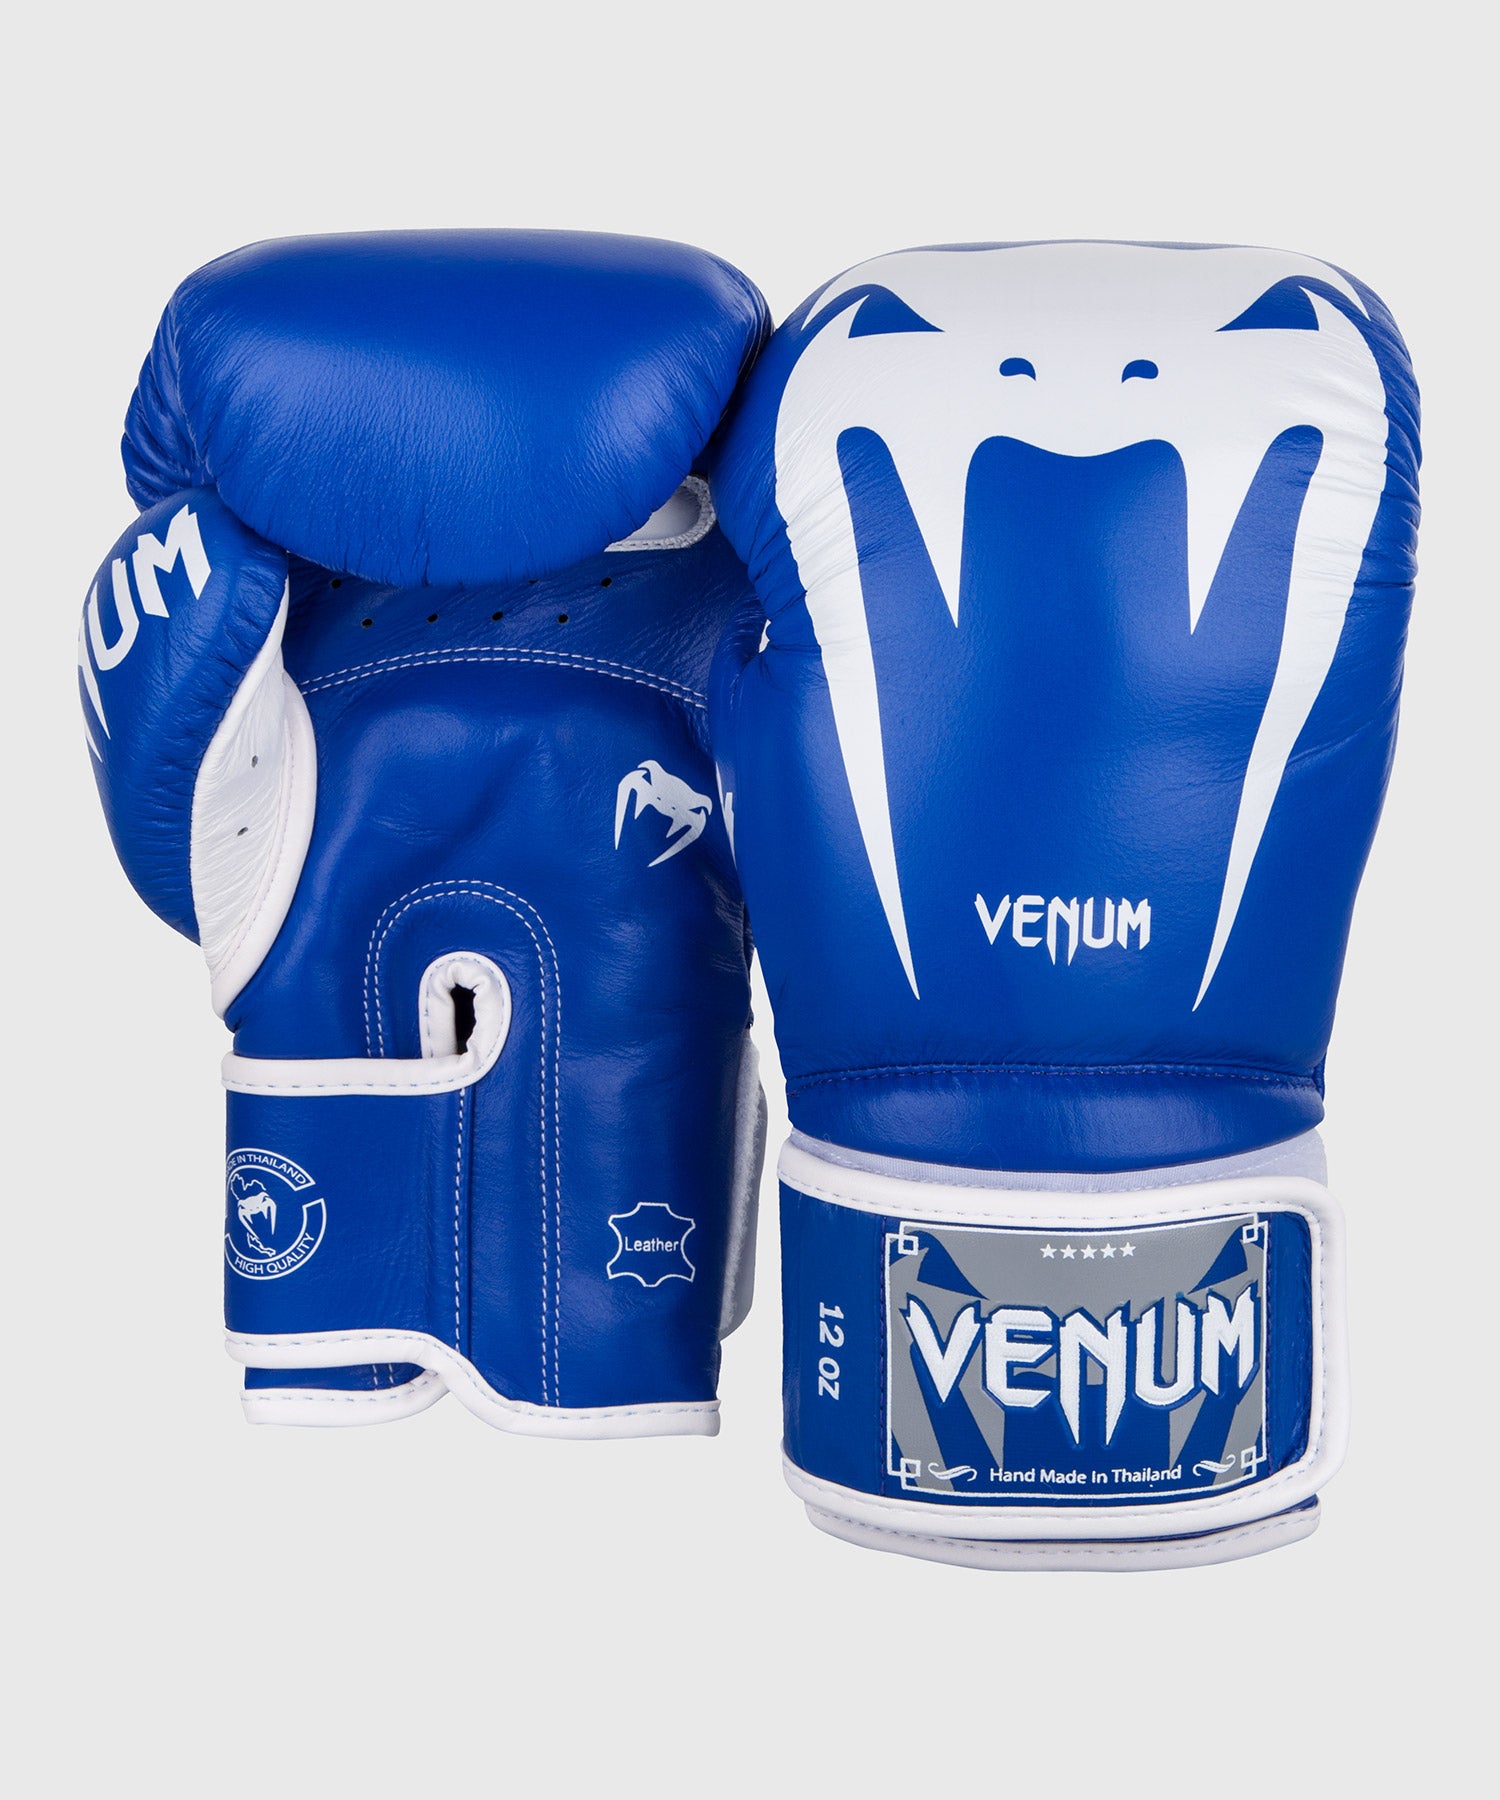 Gants de boxe Giant 3.0 - Cuir Nappa Venum